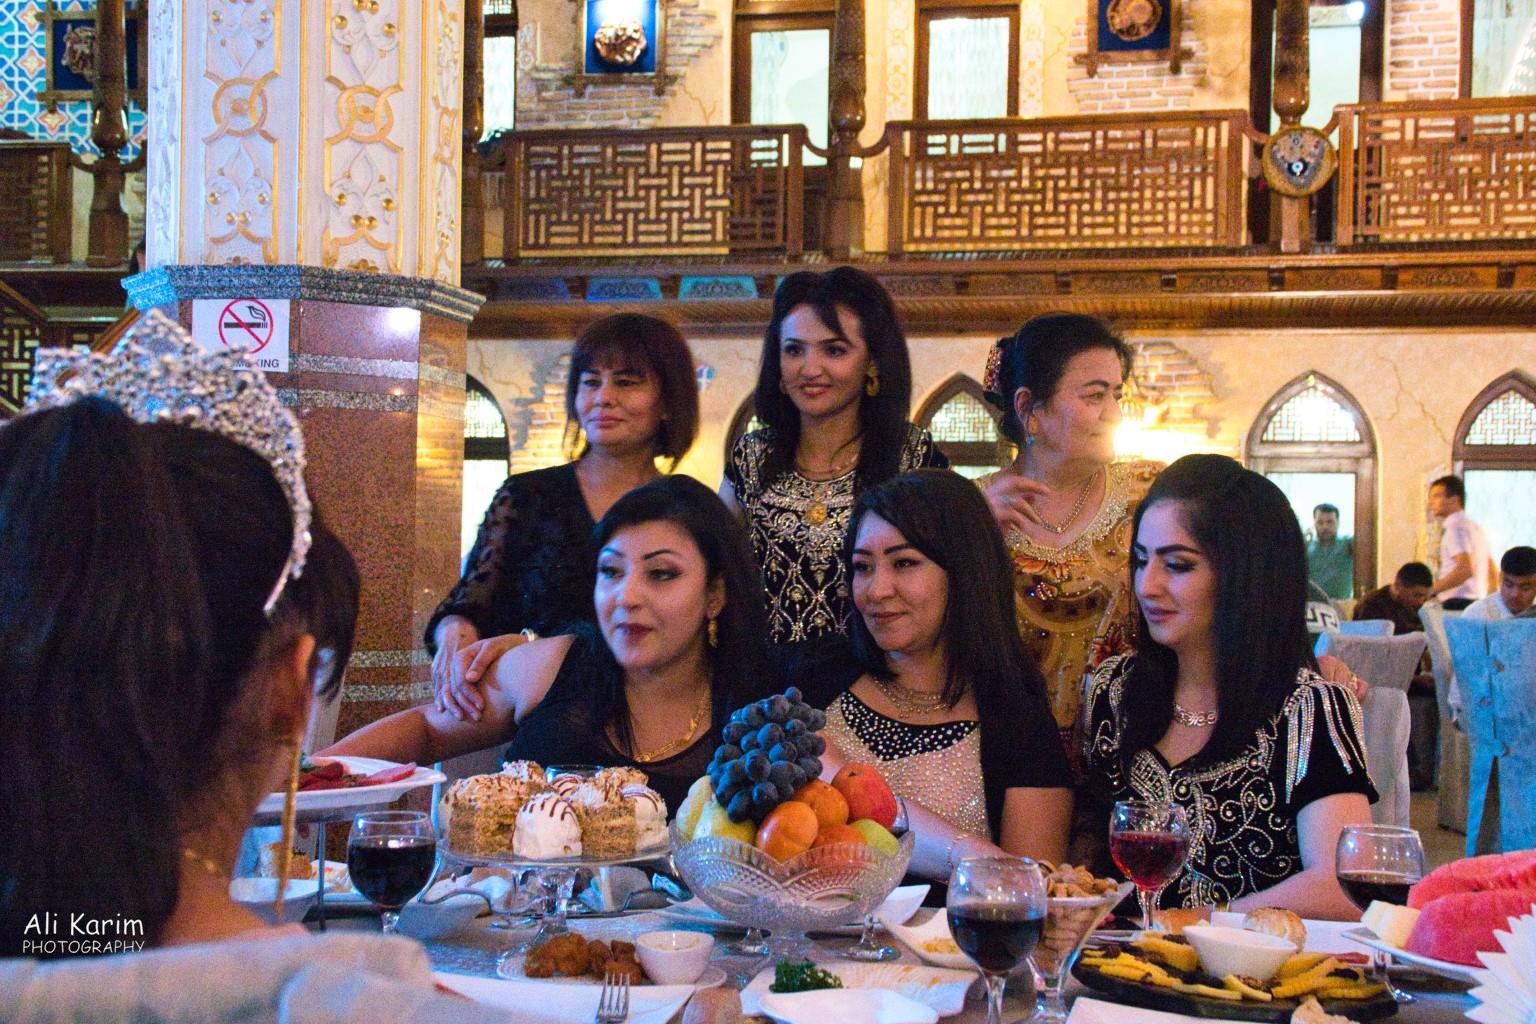 Samarkand, Uzbekistan Fashionable ladies enjoying the evening